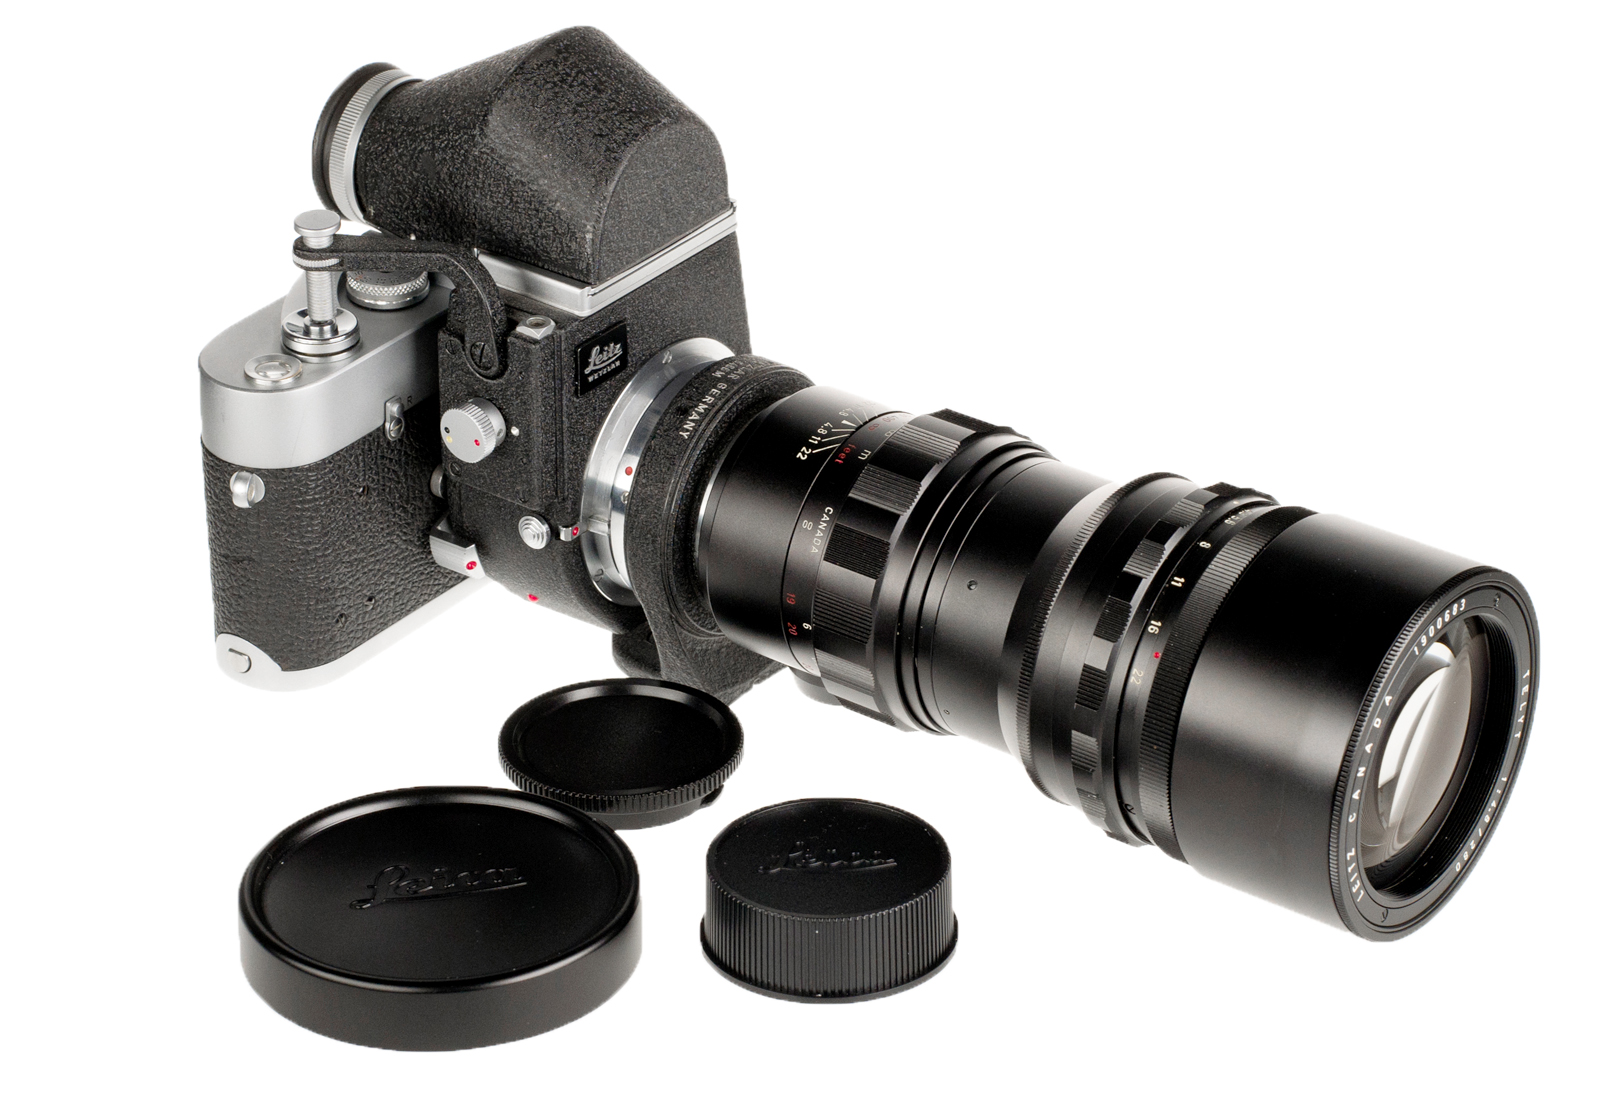 Leica MDa, chrom + Telyt 1:4,8/280mm, schwarz + Visoflex II